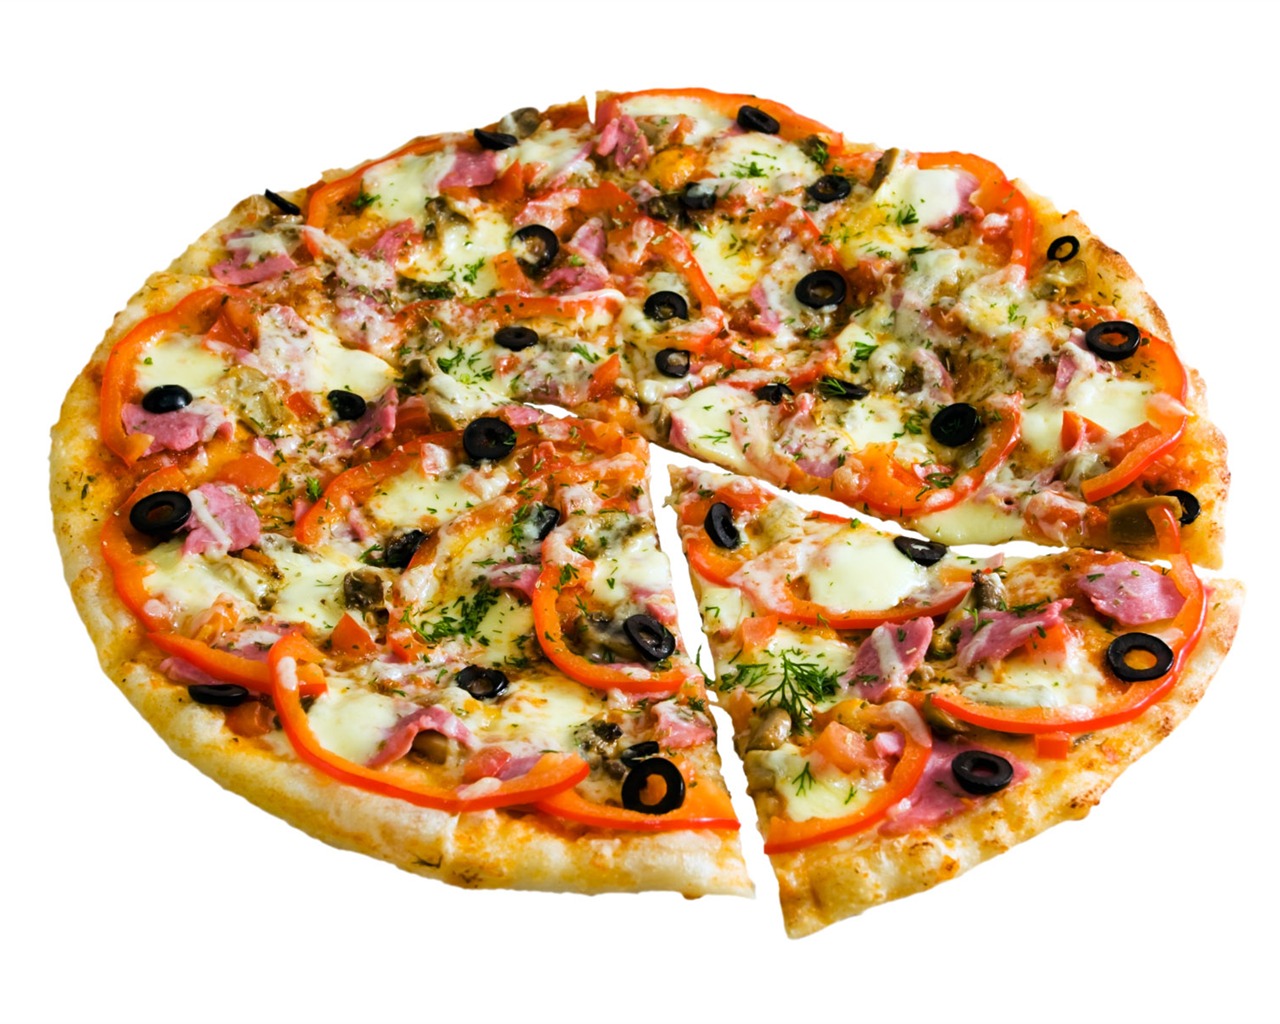 Fondos de pizzerías de Alimentos (4) #10 - 1280x1024